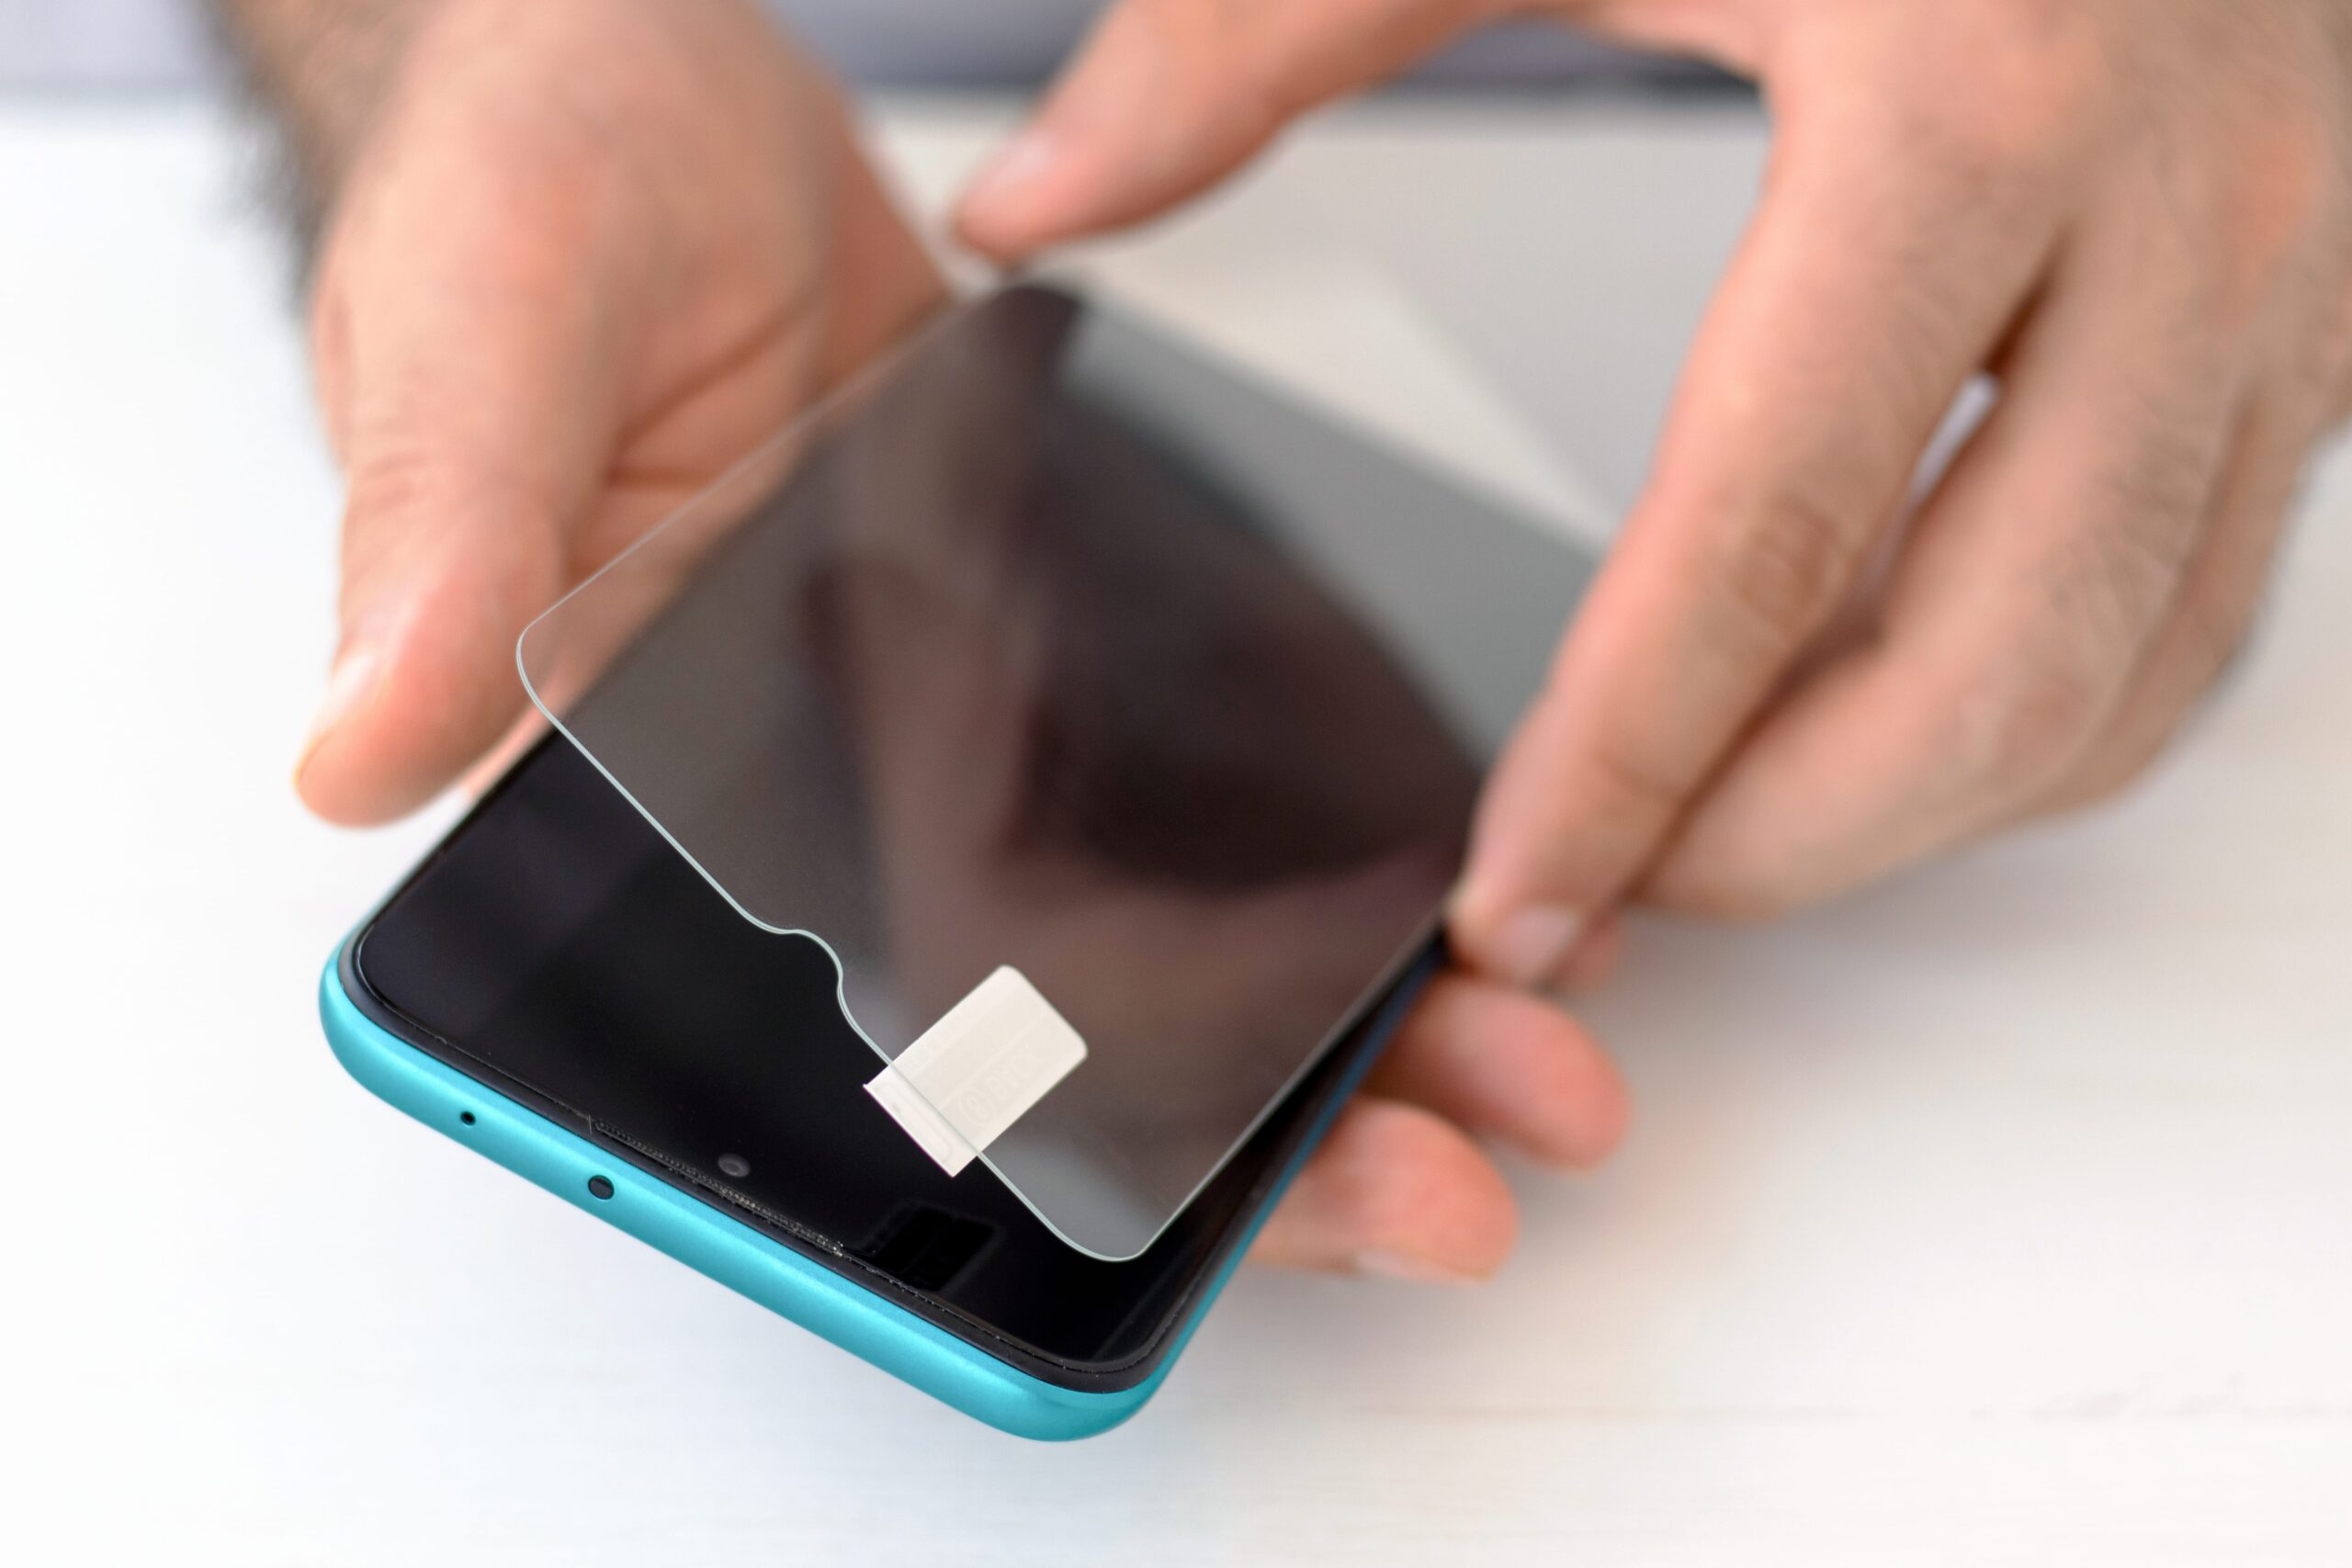 Mãos aplicando película de proteção no celular azul com a tela desligada sob uma mesa branca